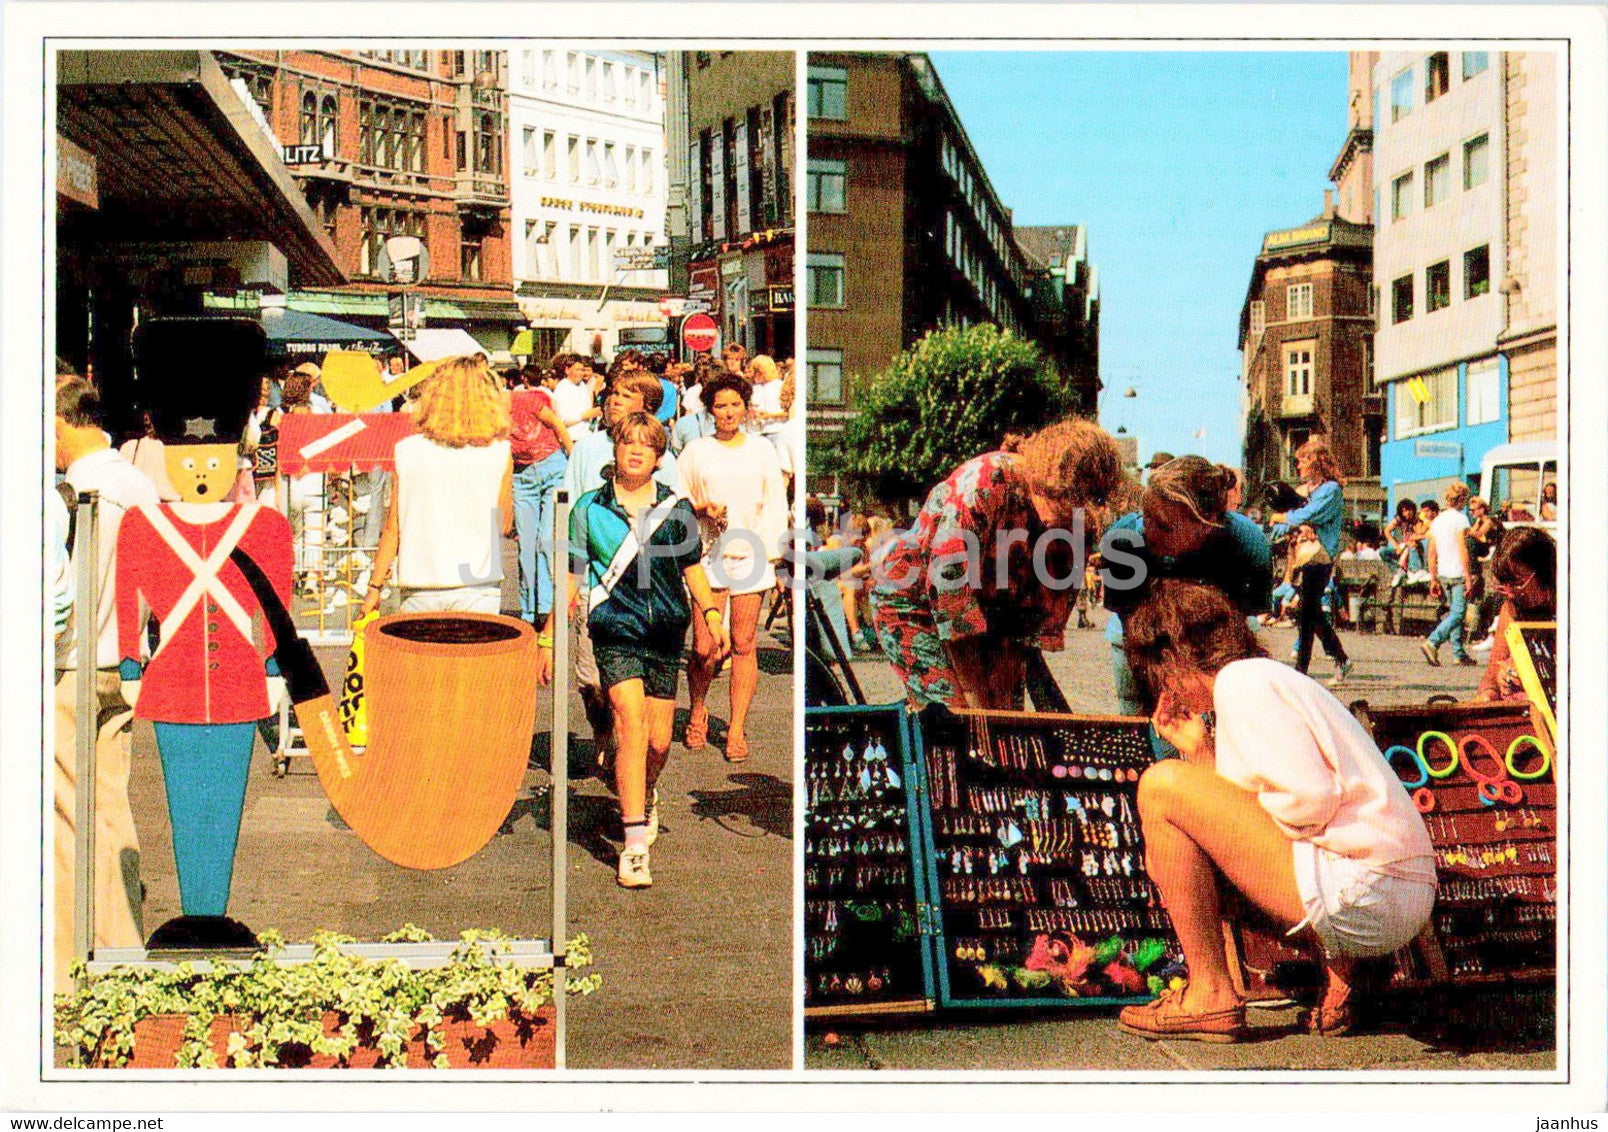 Copenhagen - Strojet - Pedestrian Street - 1989 - Denmark - used - JH Postcards